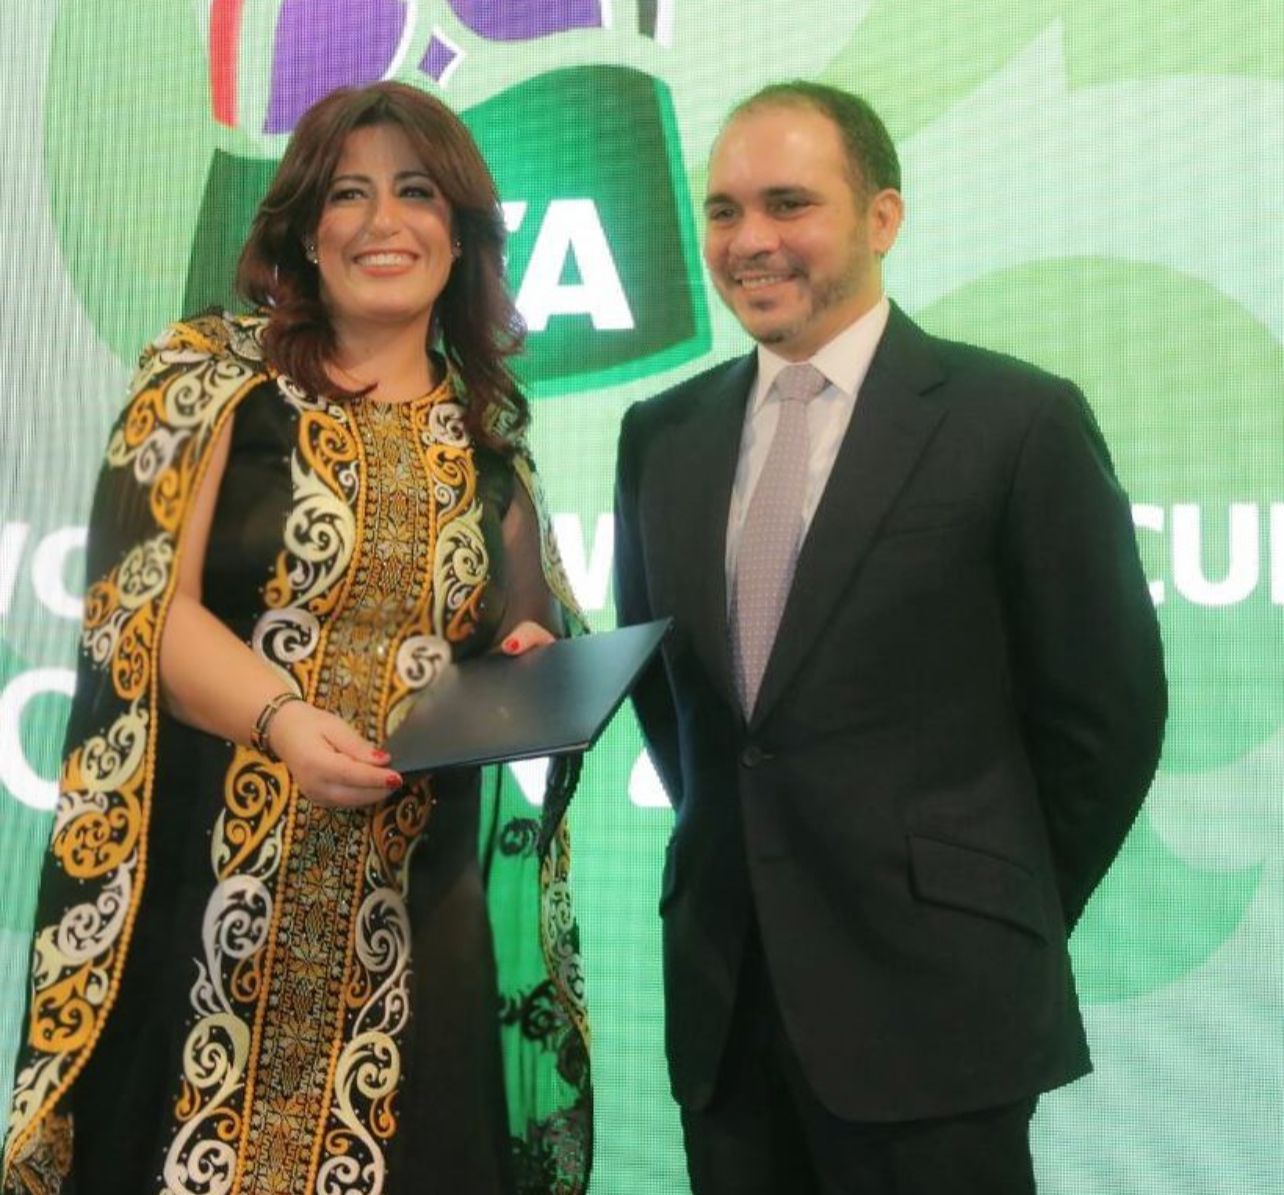  هبه الصباغ عضو في اللجنة النسوية في الاتحاد الاردني لكرة القدم